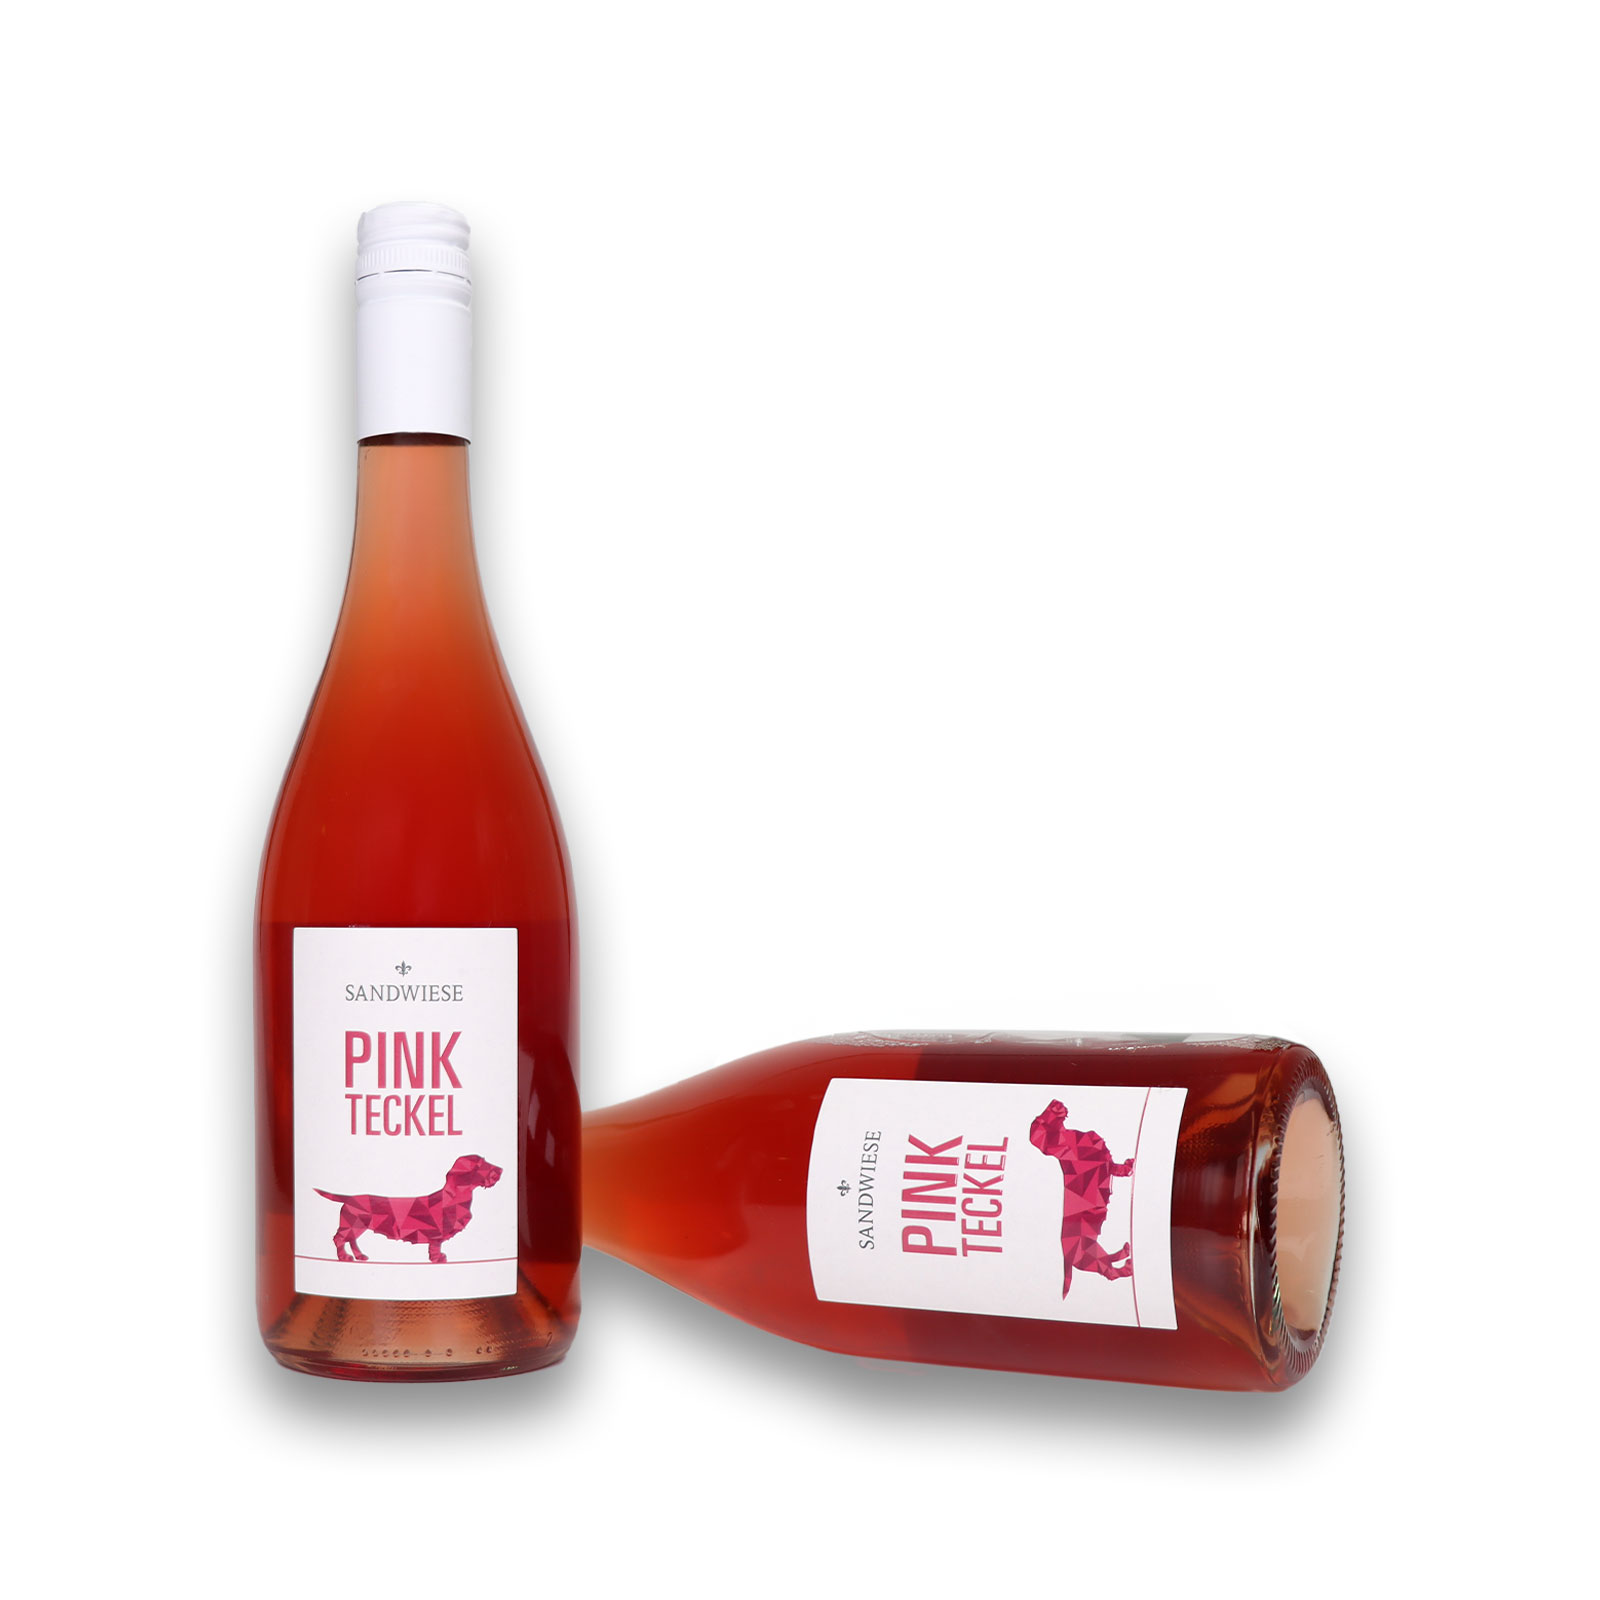 Rückseite mit Angaben zum PINK TECKEL Rosé Cuvée trocken von dem Weingut Sandwiese.